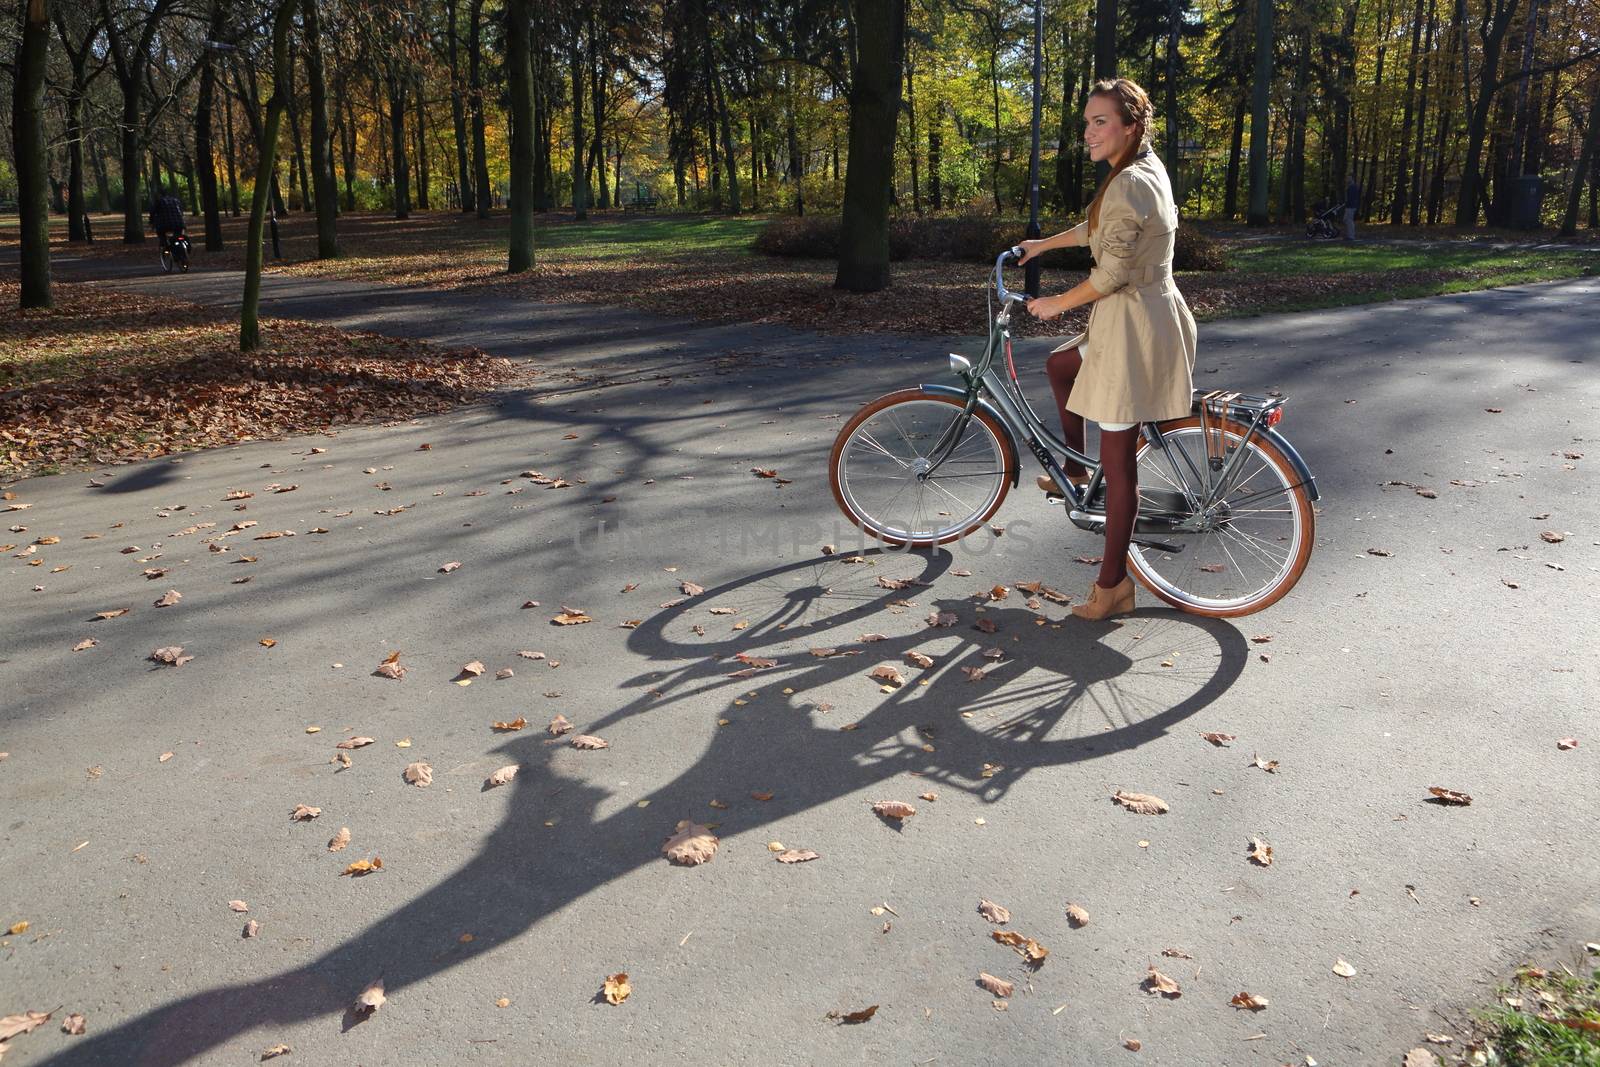 happy woman in autumn bike tour